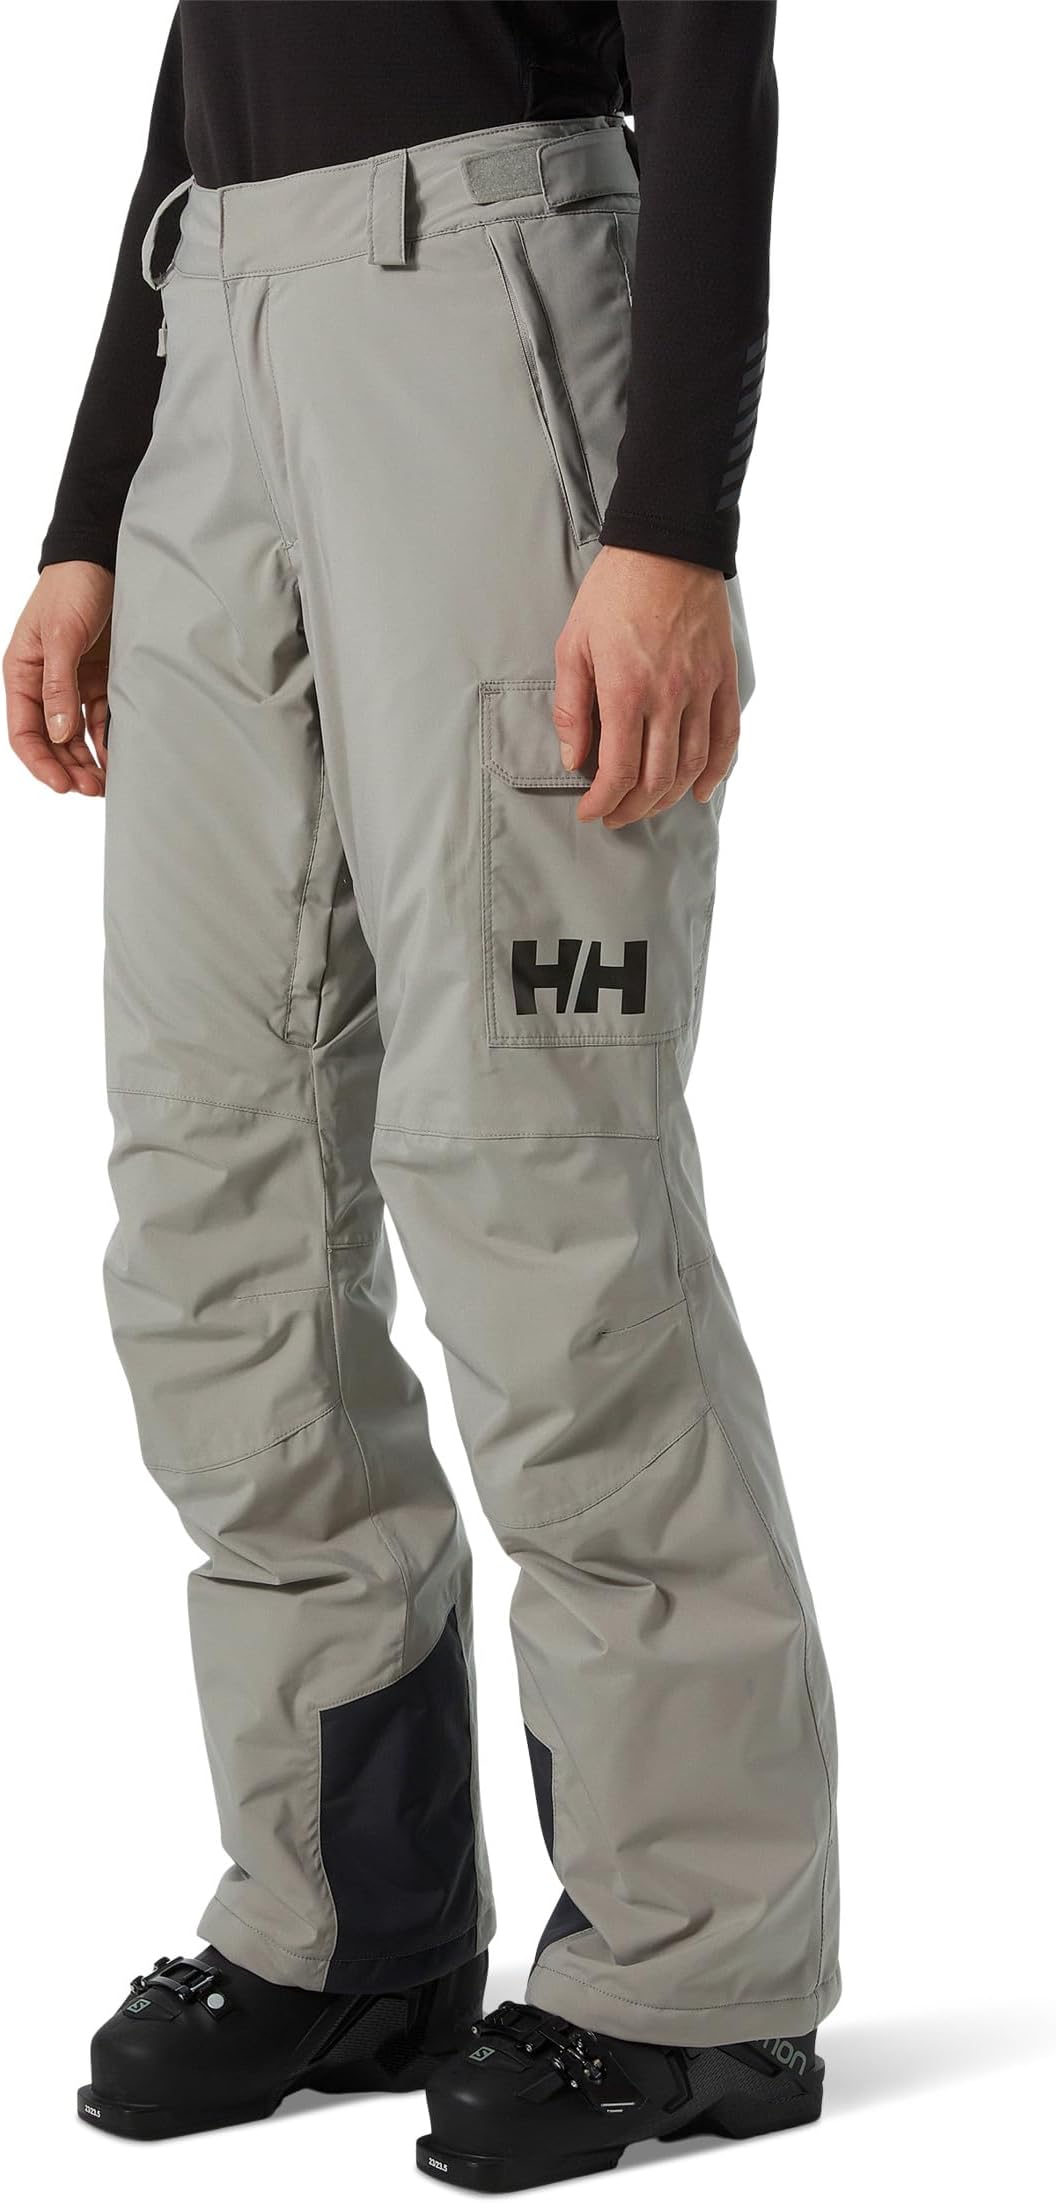 брюки switch cargo insulated pants helly hansen цвет terrazzo Брюки Switch Cargo Insulated Pants Helly Hansen, цвет Terrazzo